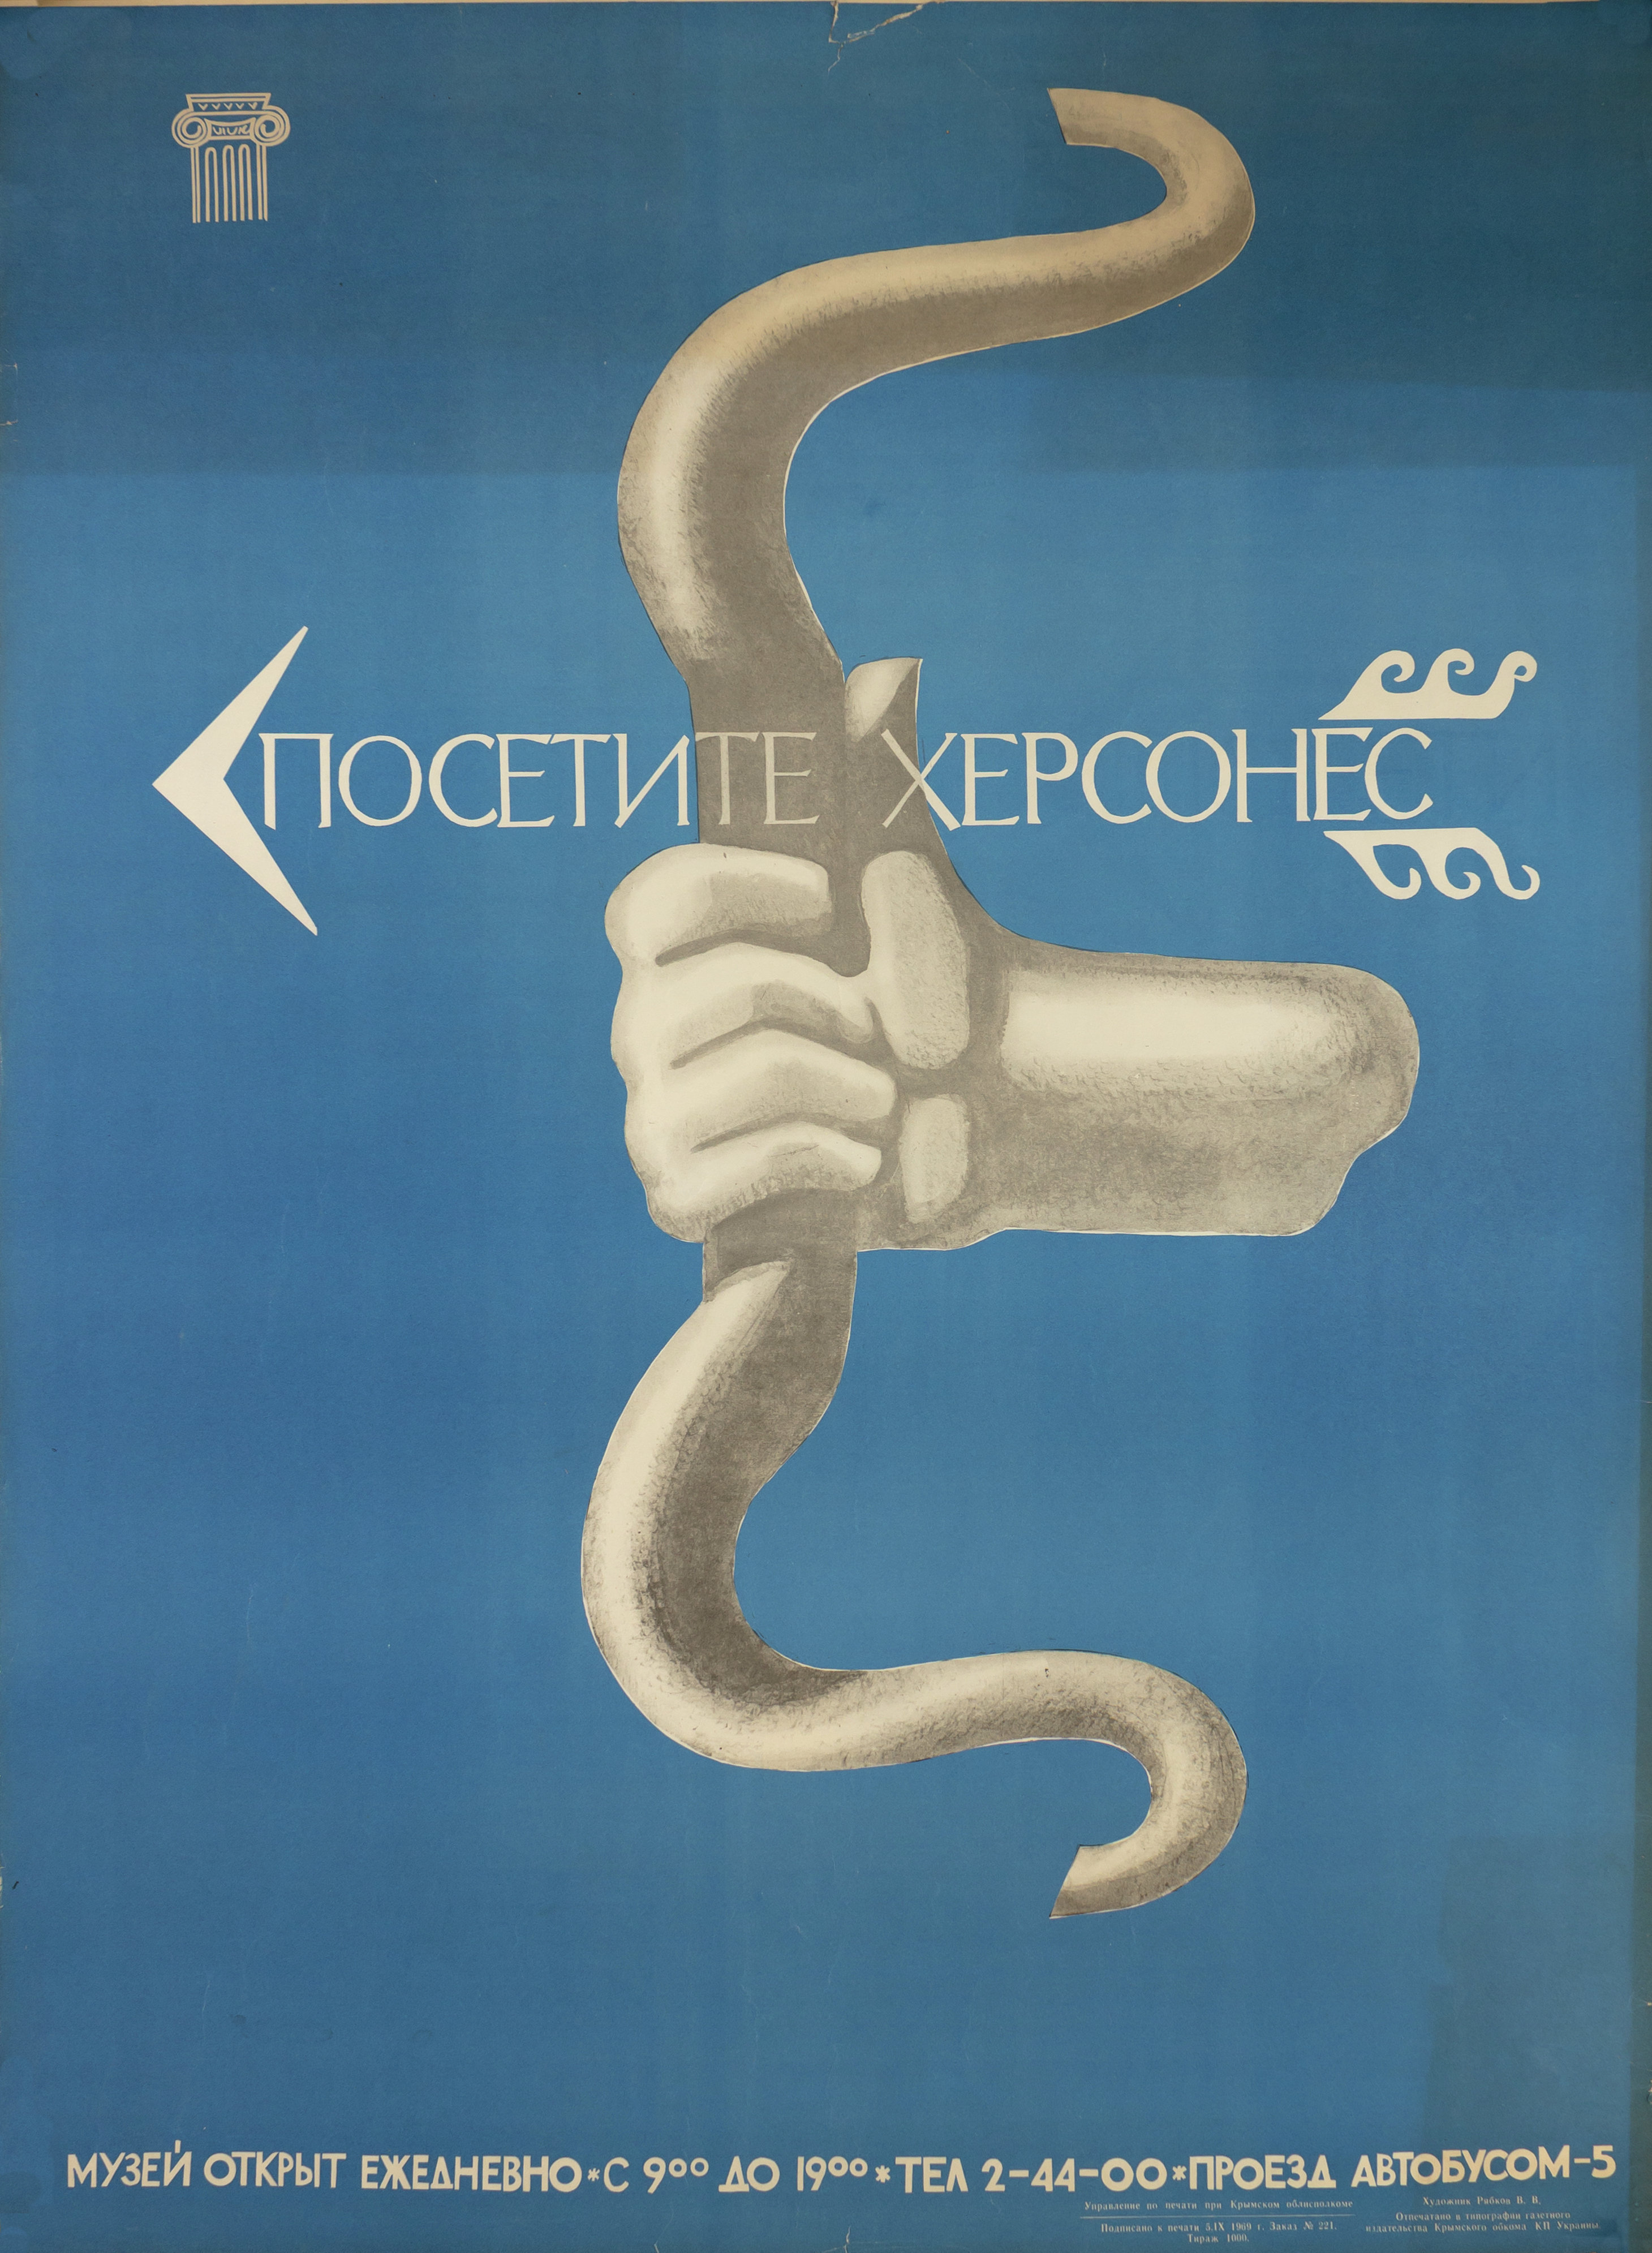 Плакат &amp;laquo;Посетите Херсонес&amp;raquo;, художник В. Рябков. 1969 год